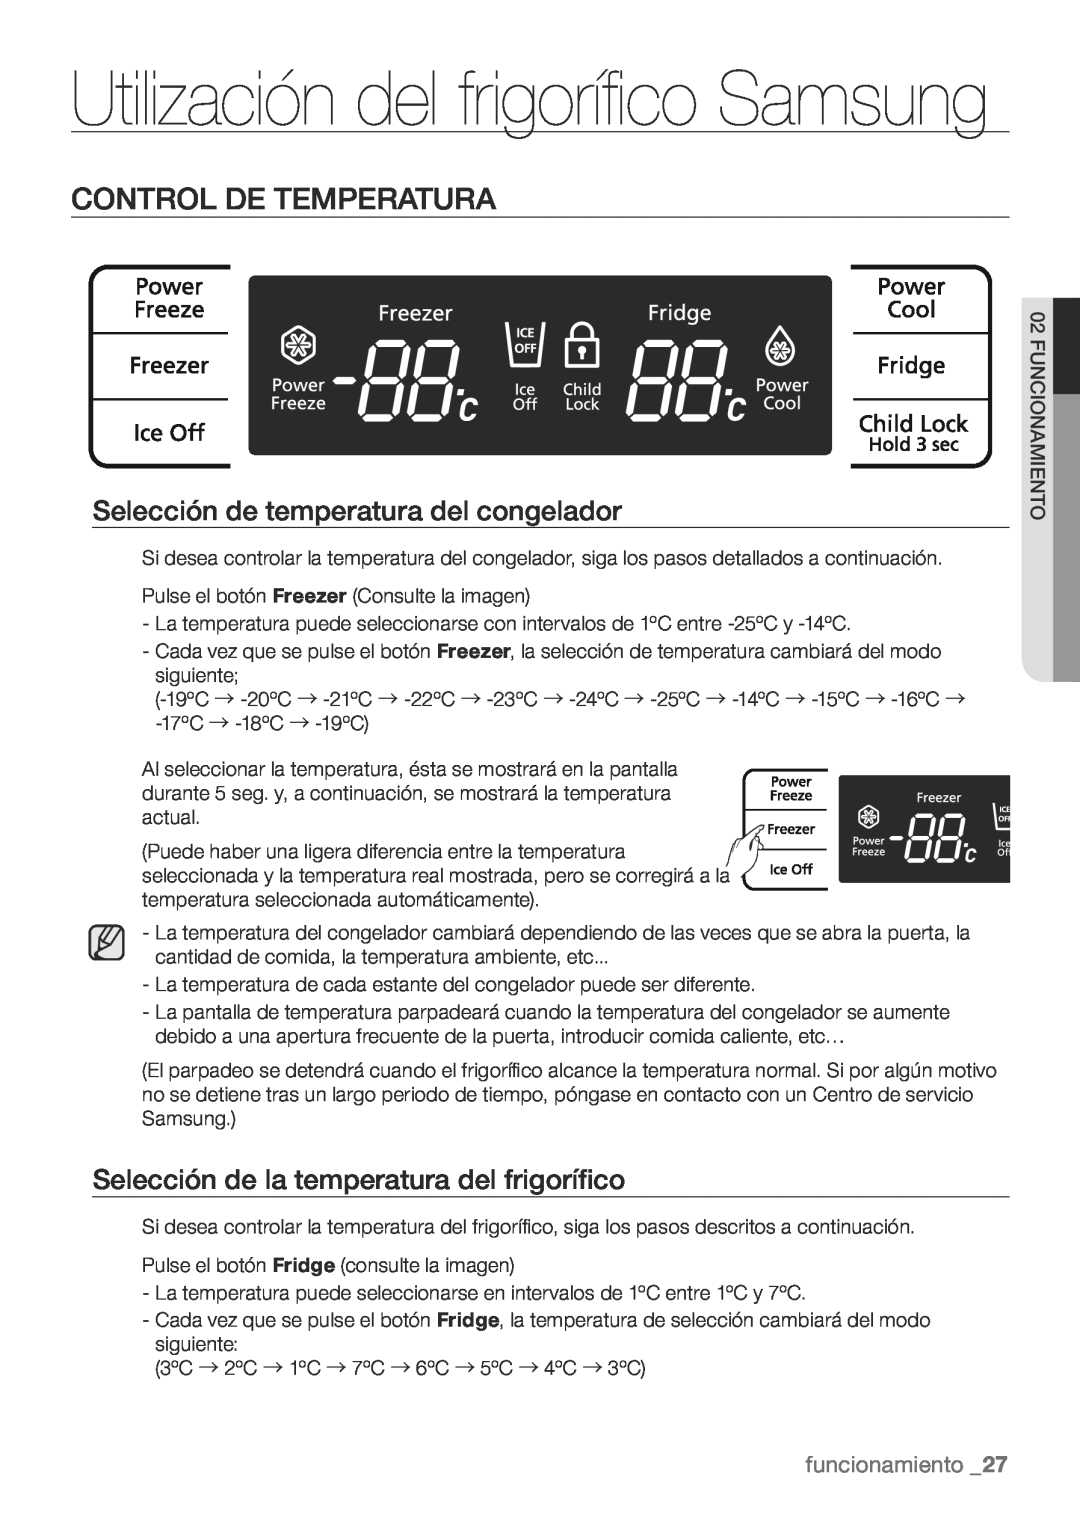 Samsung RL62VCSW1/XES Utilización del frigorífico Samsung, Control De Temperatura, Selección de temperatura del congelador 